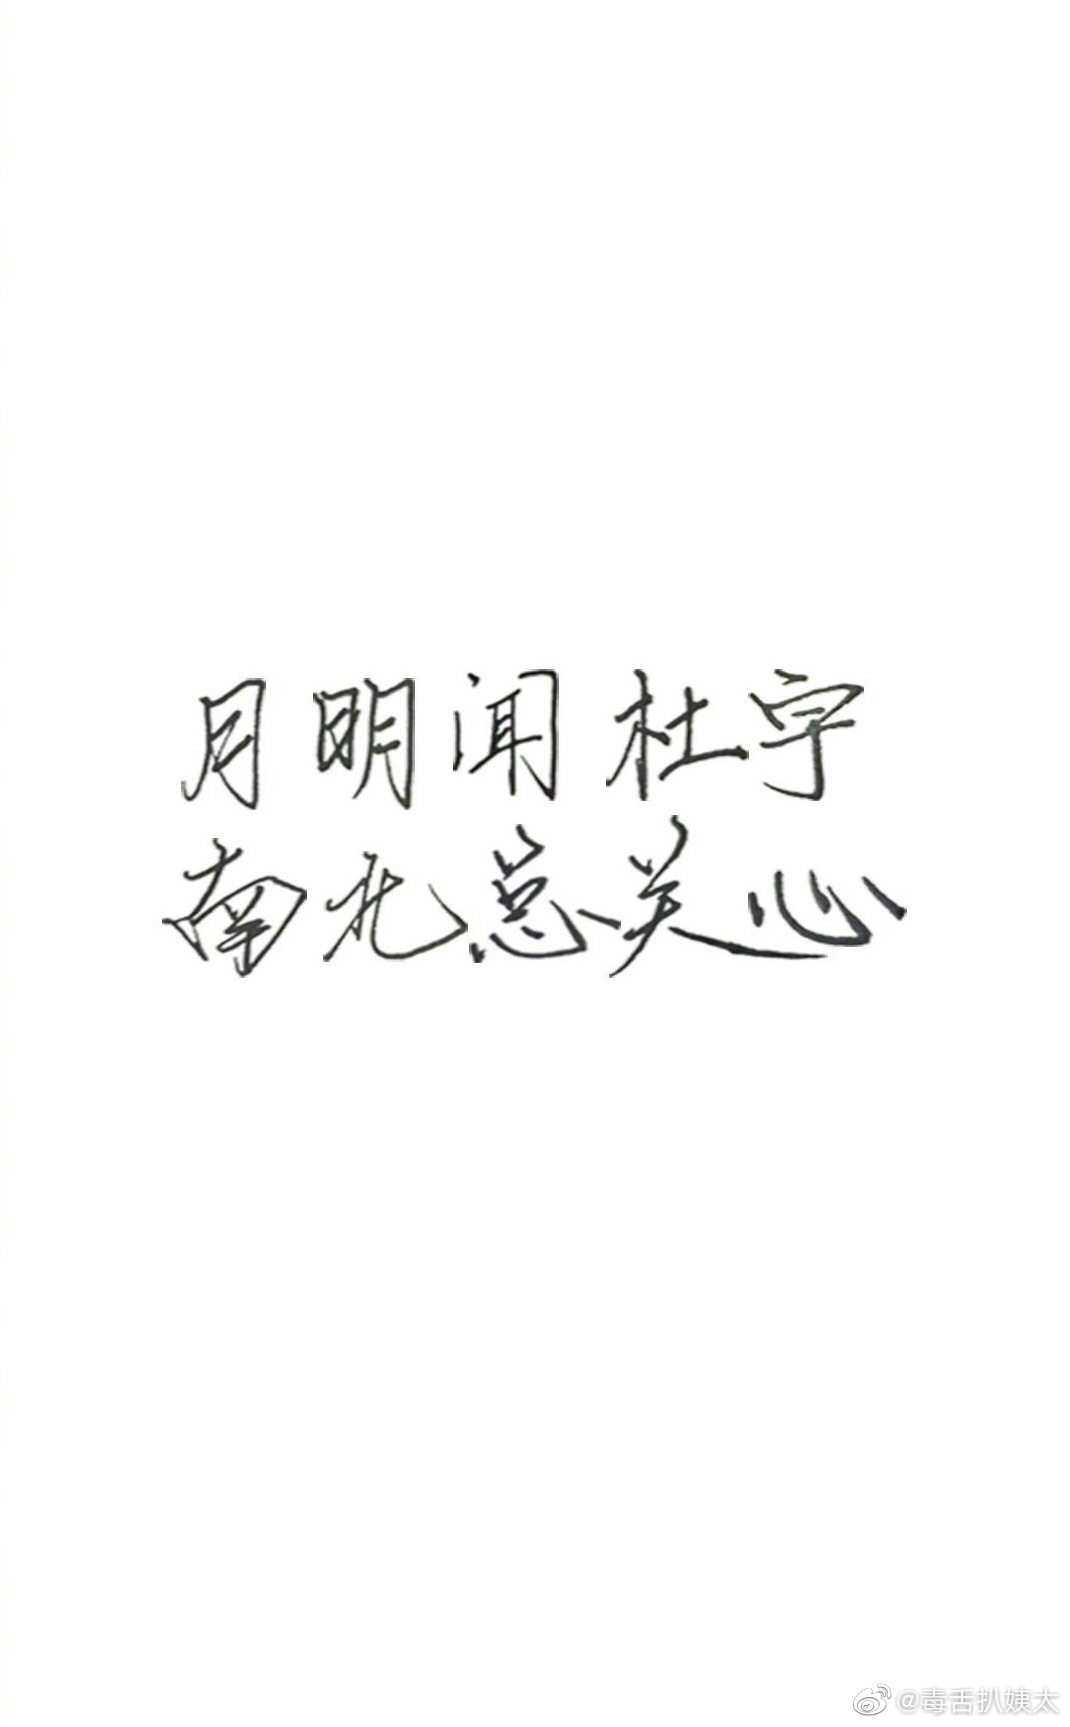 [王源][新闻]200318 王源字体被夸赞 笔力遒劲棱角分明